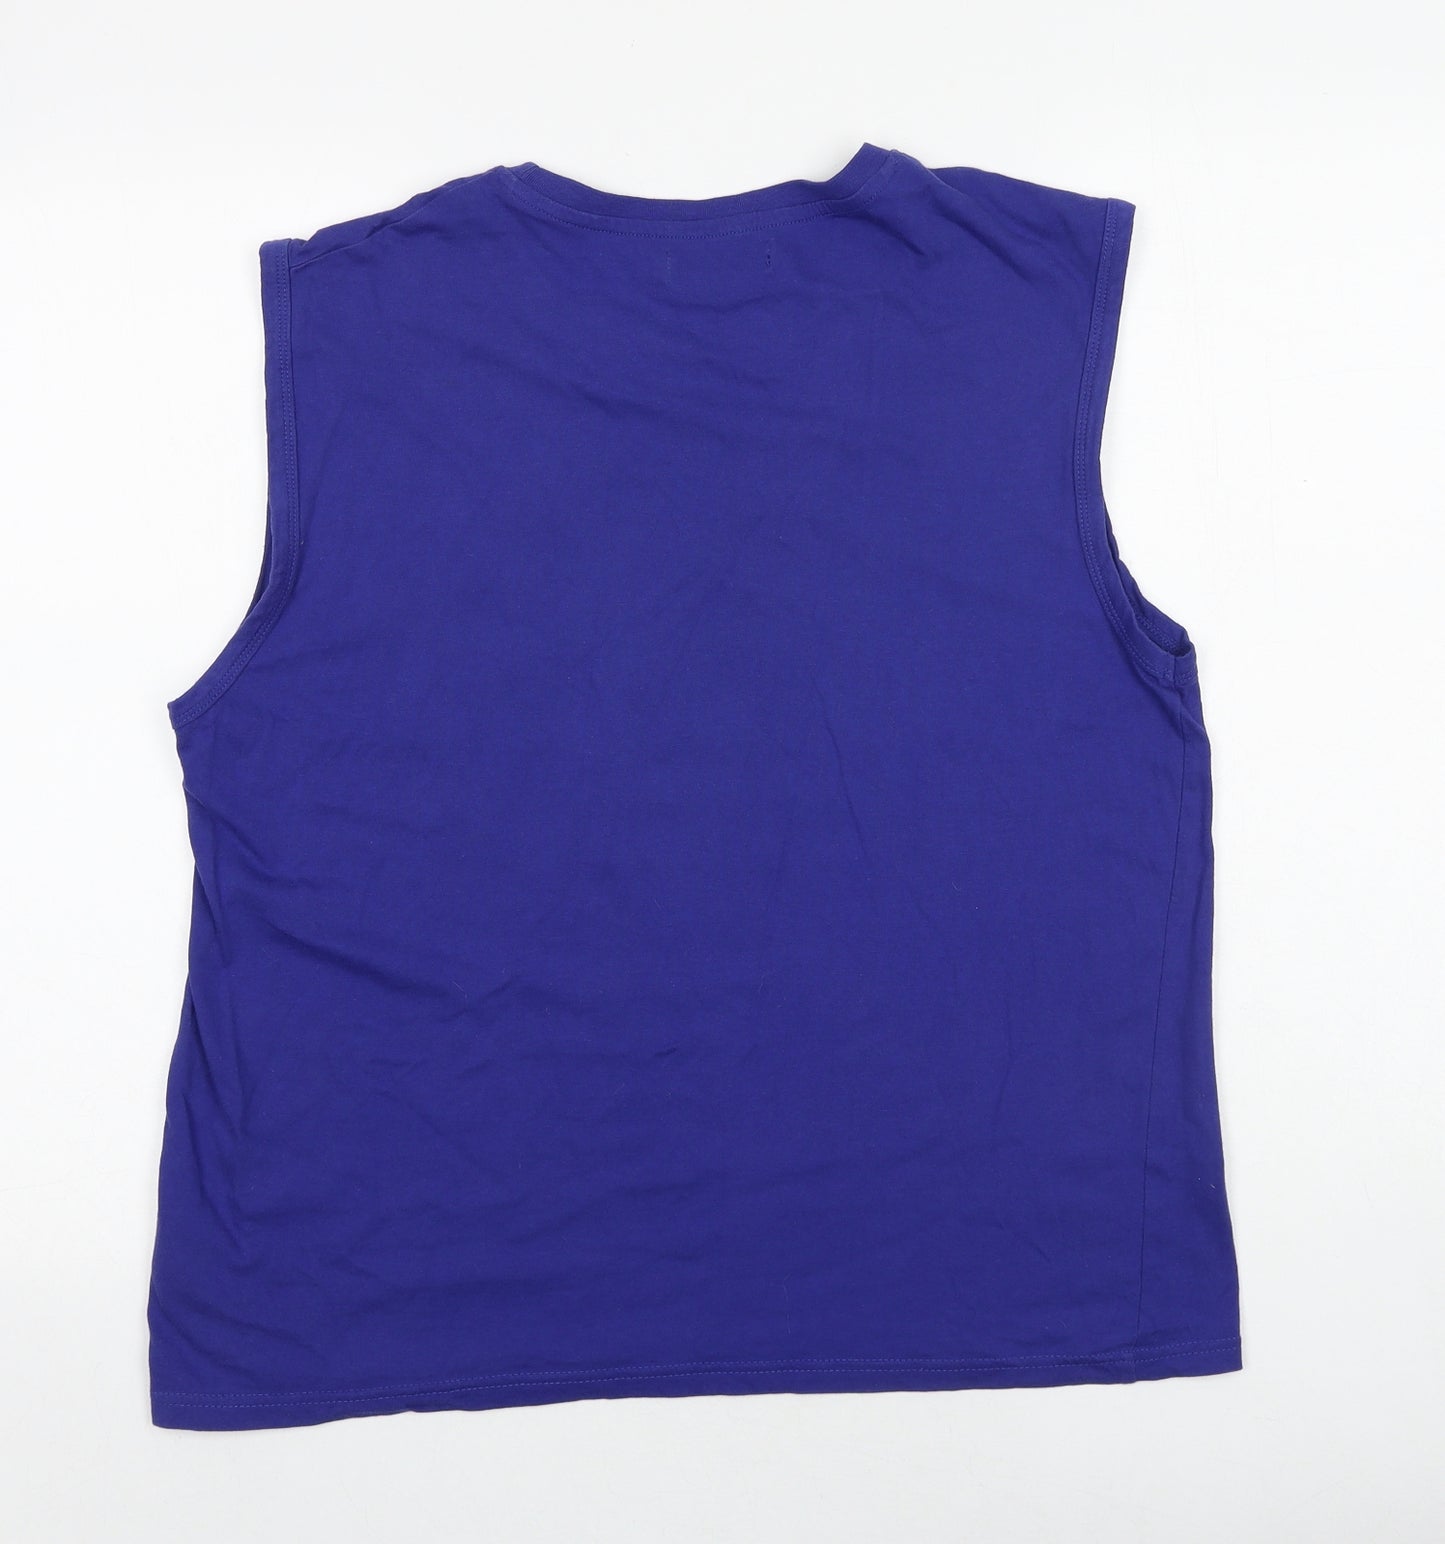 Pierre Cardin Mens Purple Cotton T-Shirt Size L Round Neck